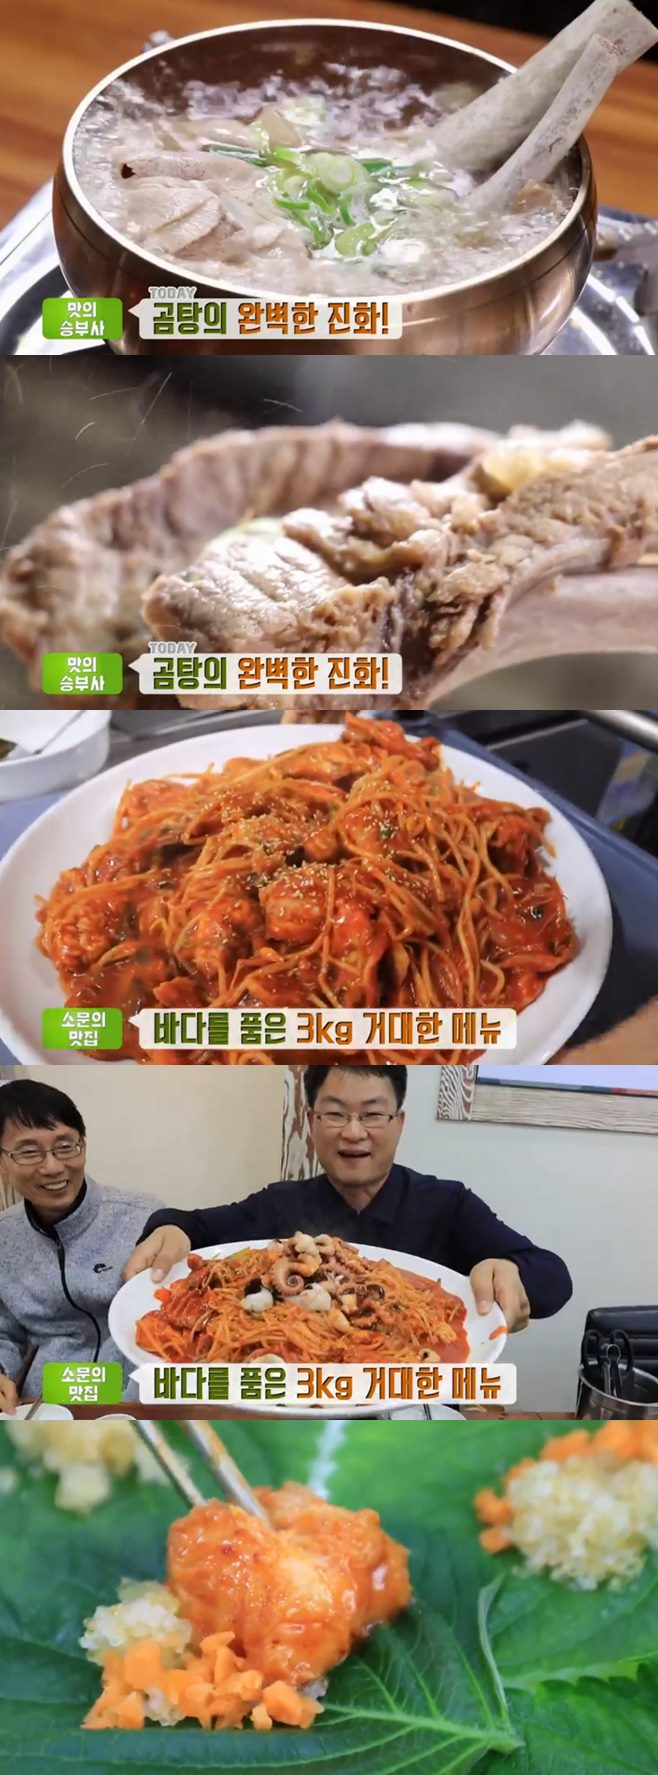 ‘생방송투데이’ 크로와상(미들웨이)+해물찜+맛의승부사 돼지갈비곰탕(거자필반) 맛집